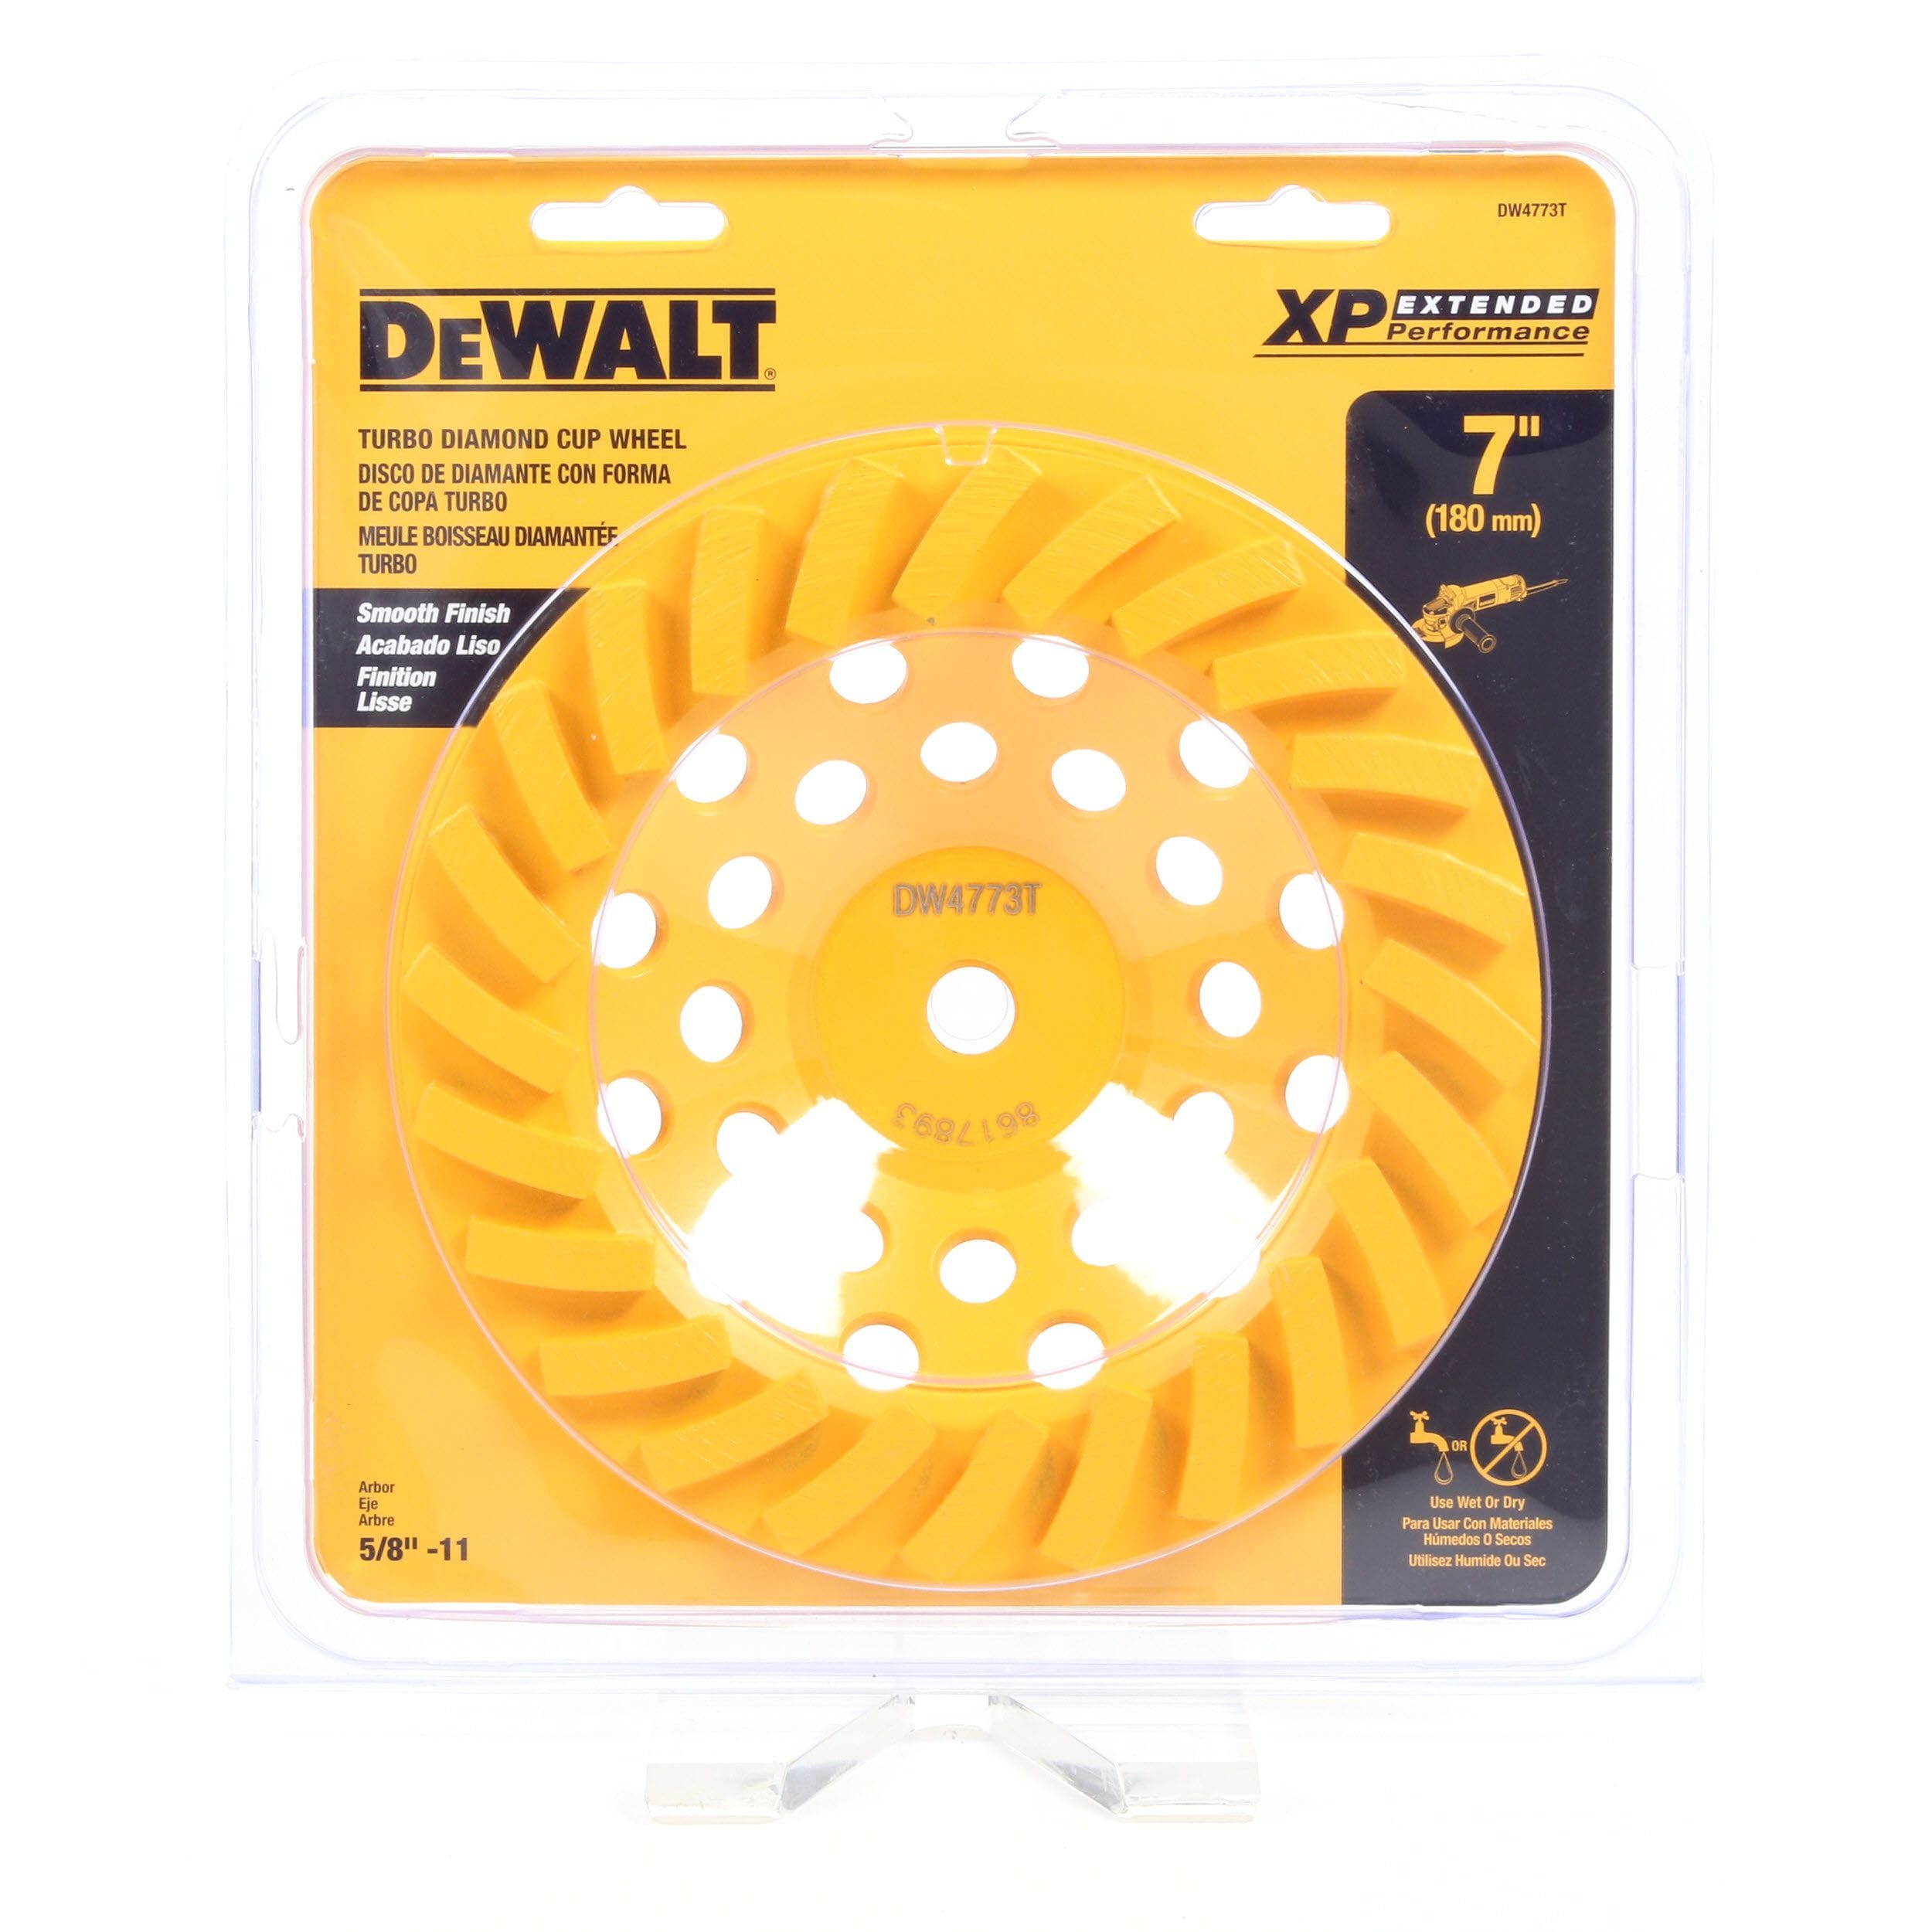 7 pcs DEWALT DW 4759 type 27 concrete grinding wheels 7" x 1/4" x 5/8"-11 arbor 